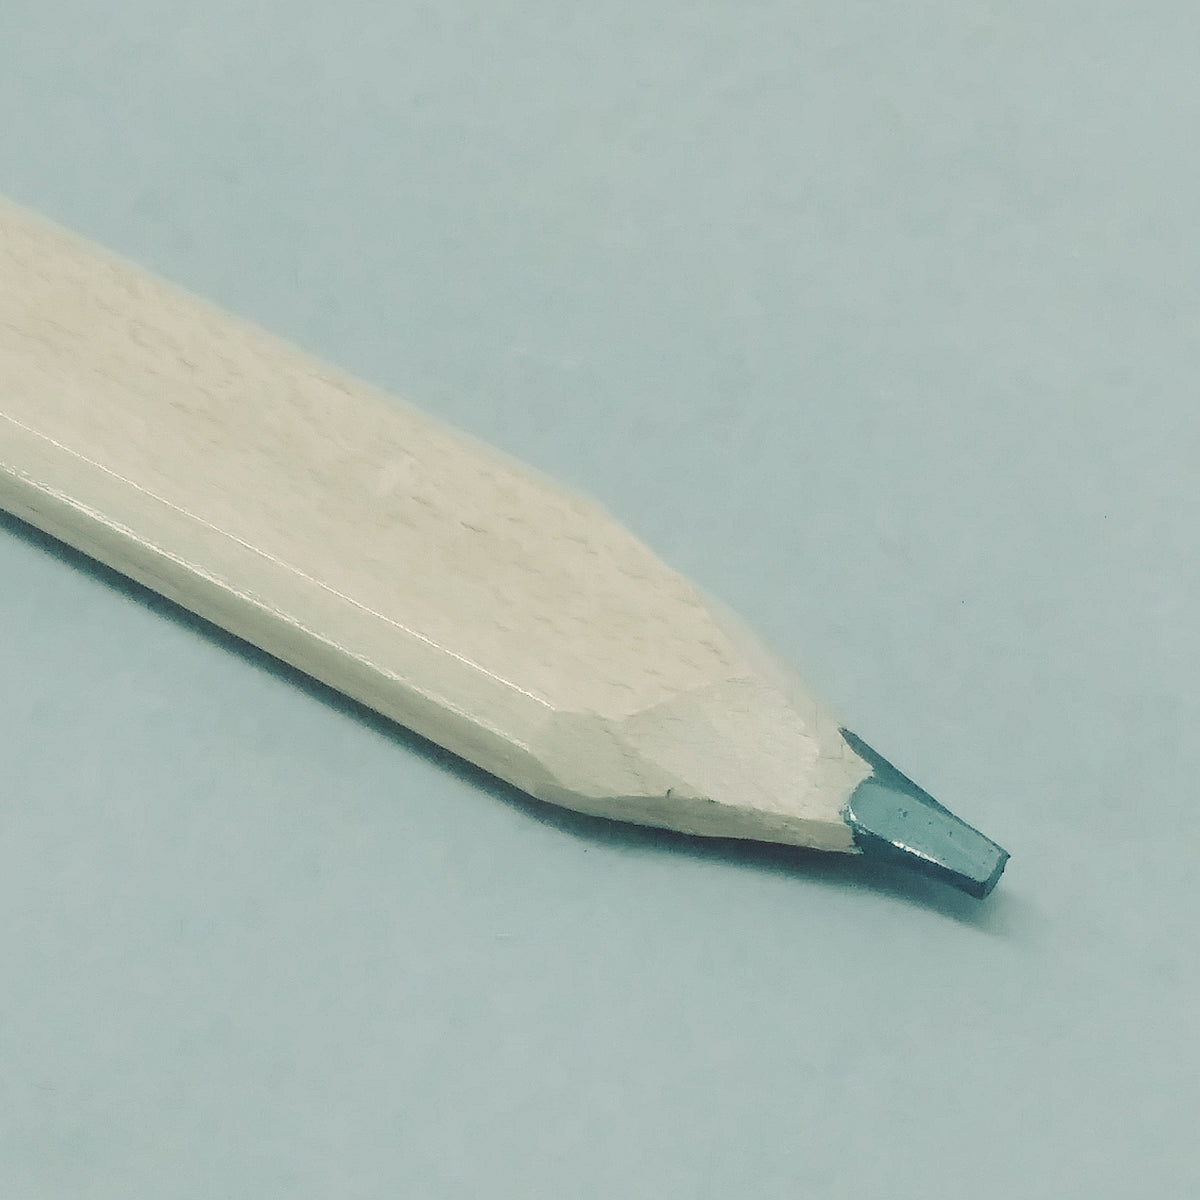 Measure Twice - Carpenter Pencil